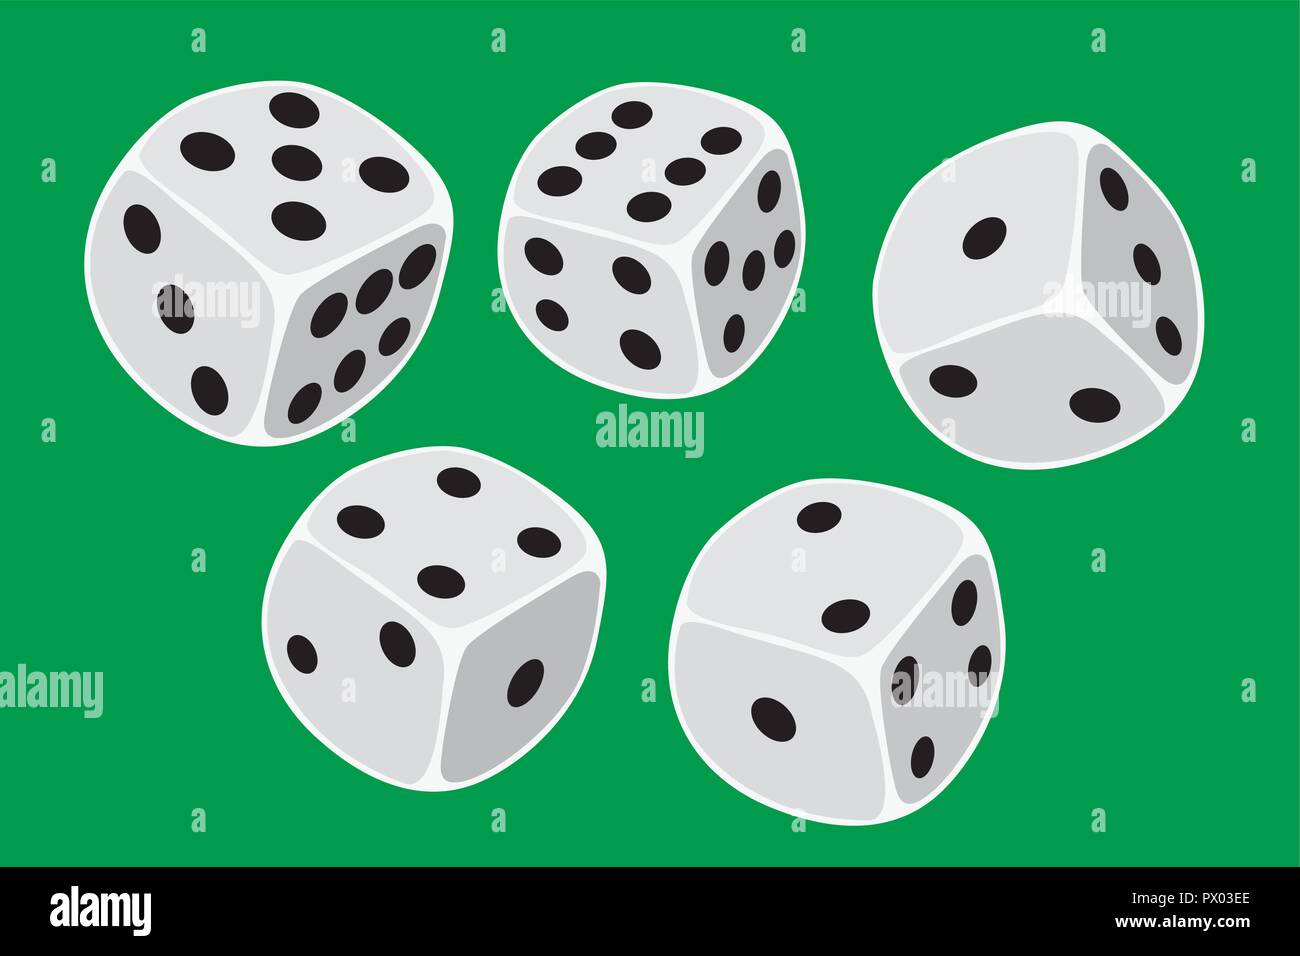 Fünf weißen Würfel Größe in ein Craps Spiel, KNOBELN oder jede Art von würfelspiel vor einem grünen Hintergrund geworfen - Abbildung in einfachen Clean Design Stock Vektor